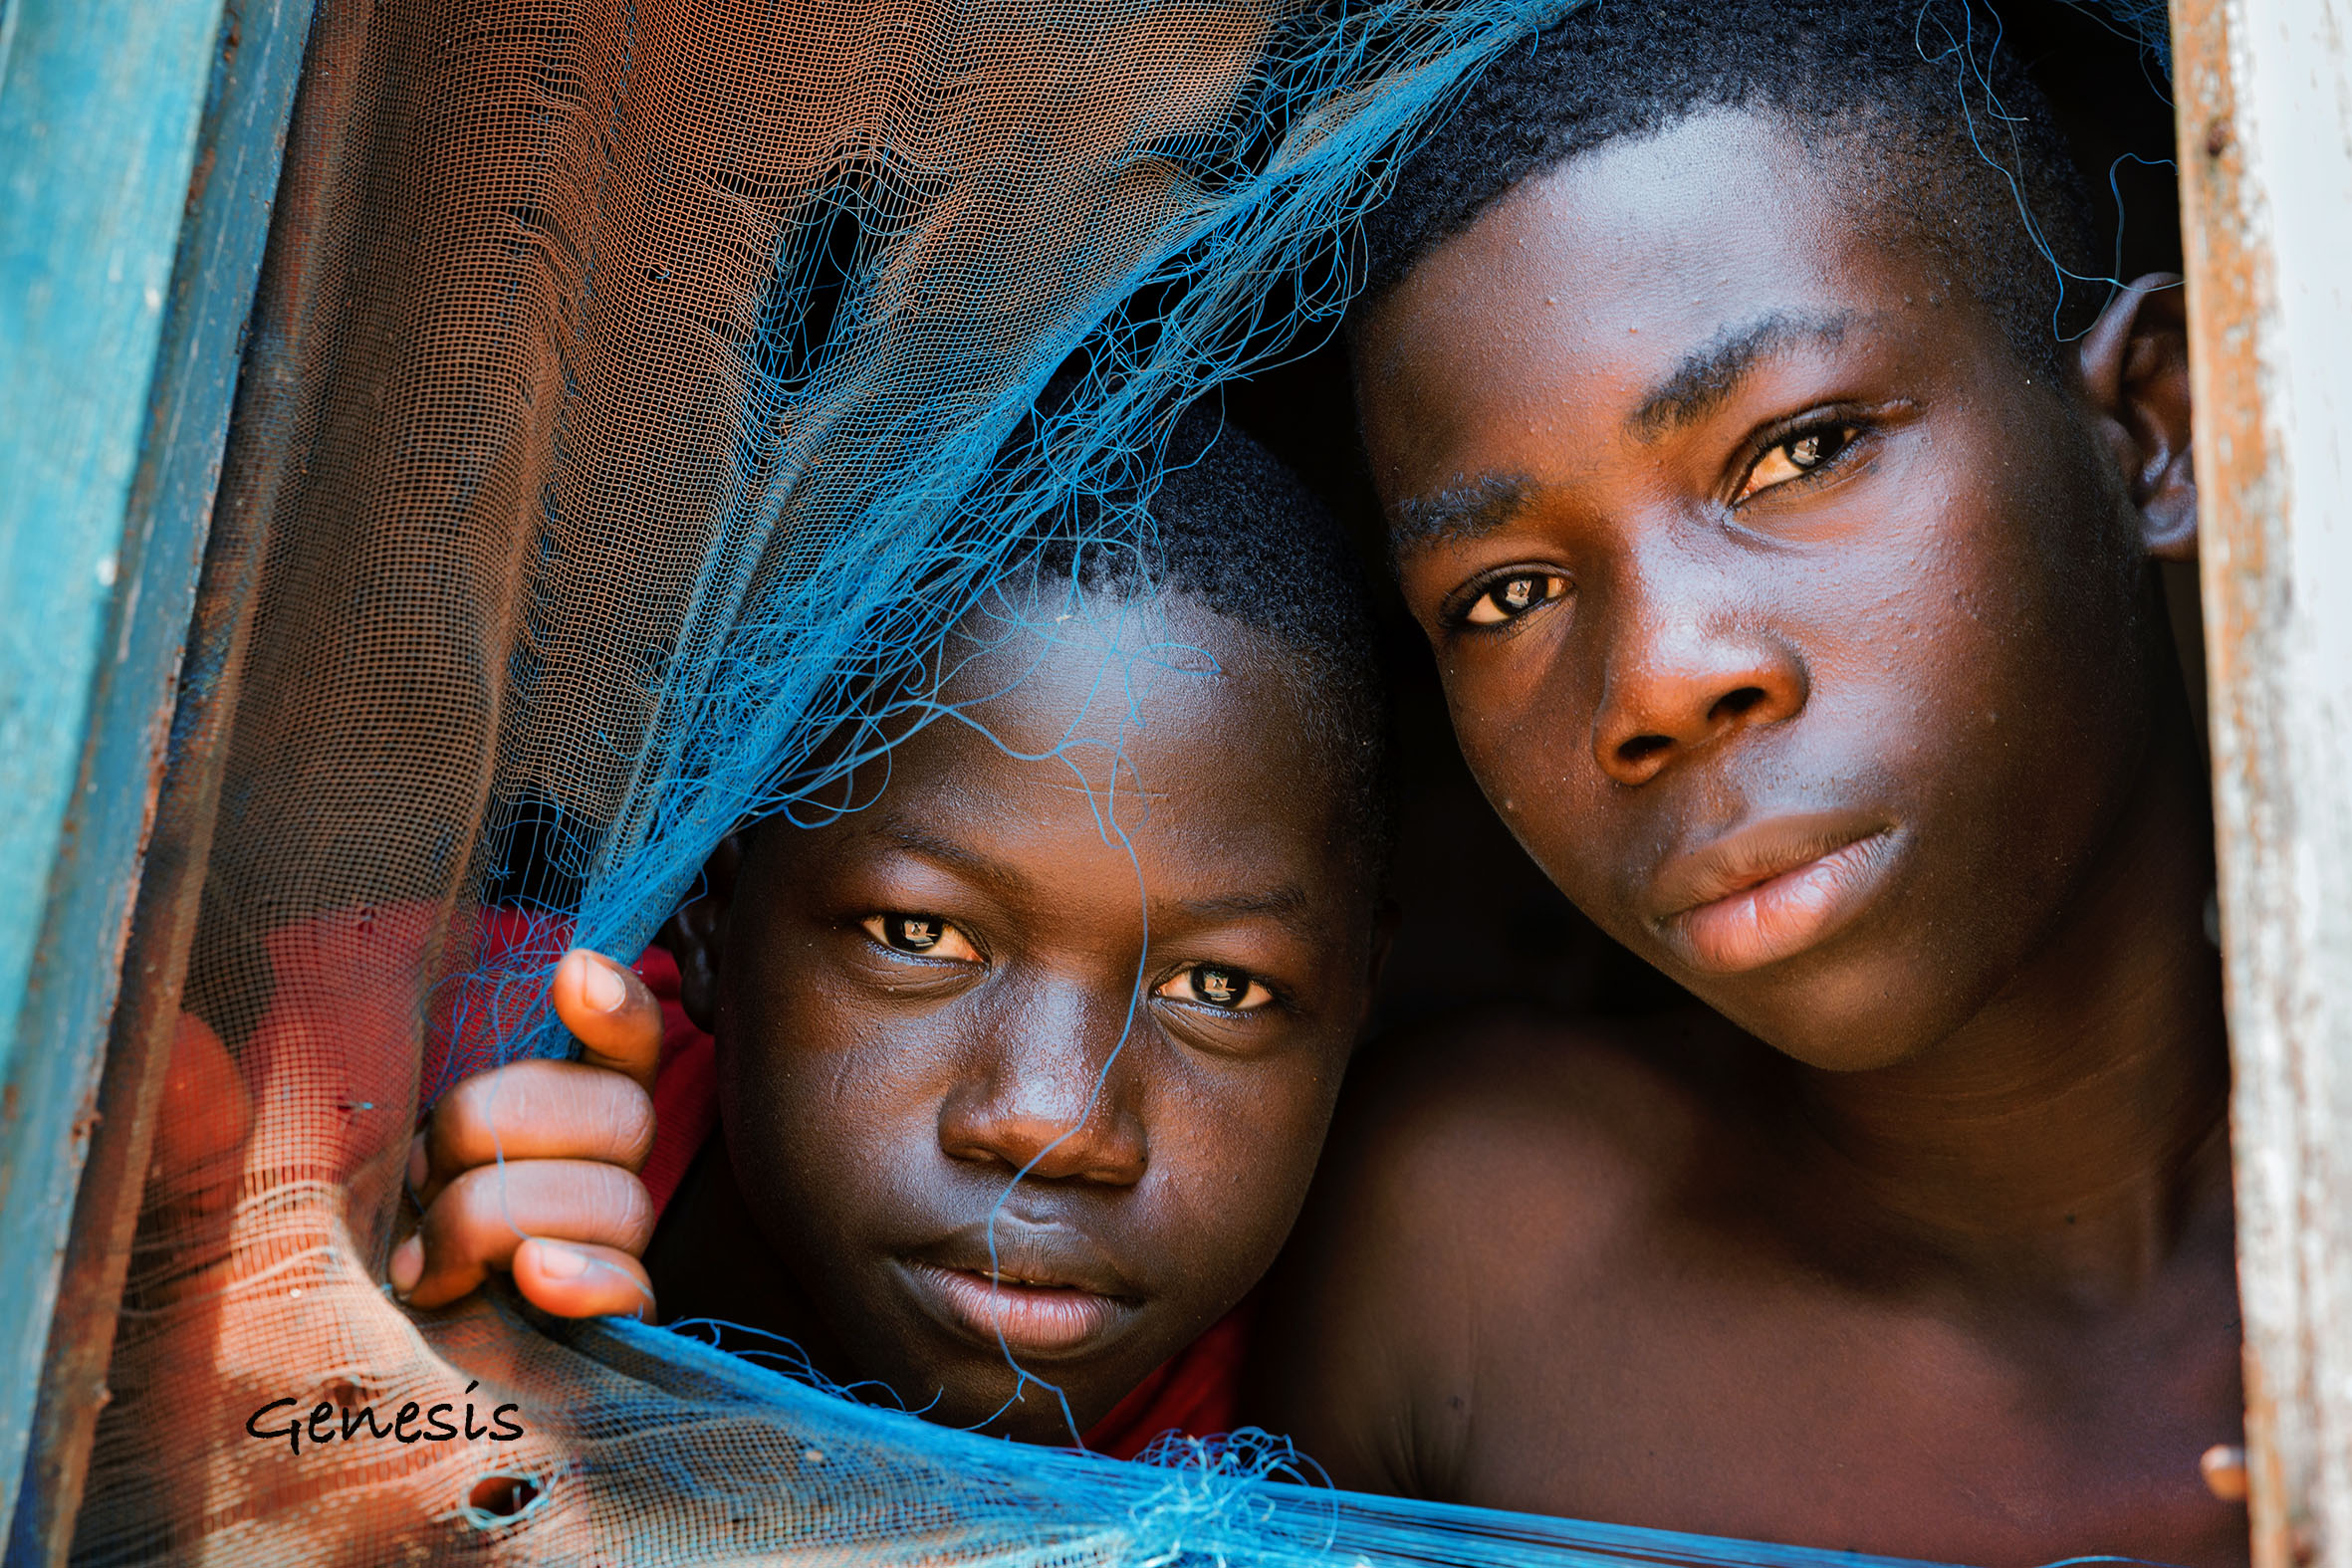 Boys at the window, Ghana...